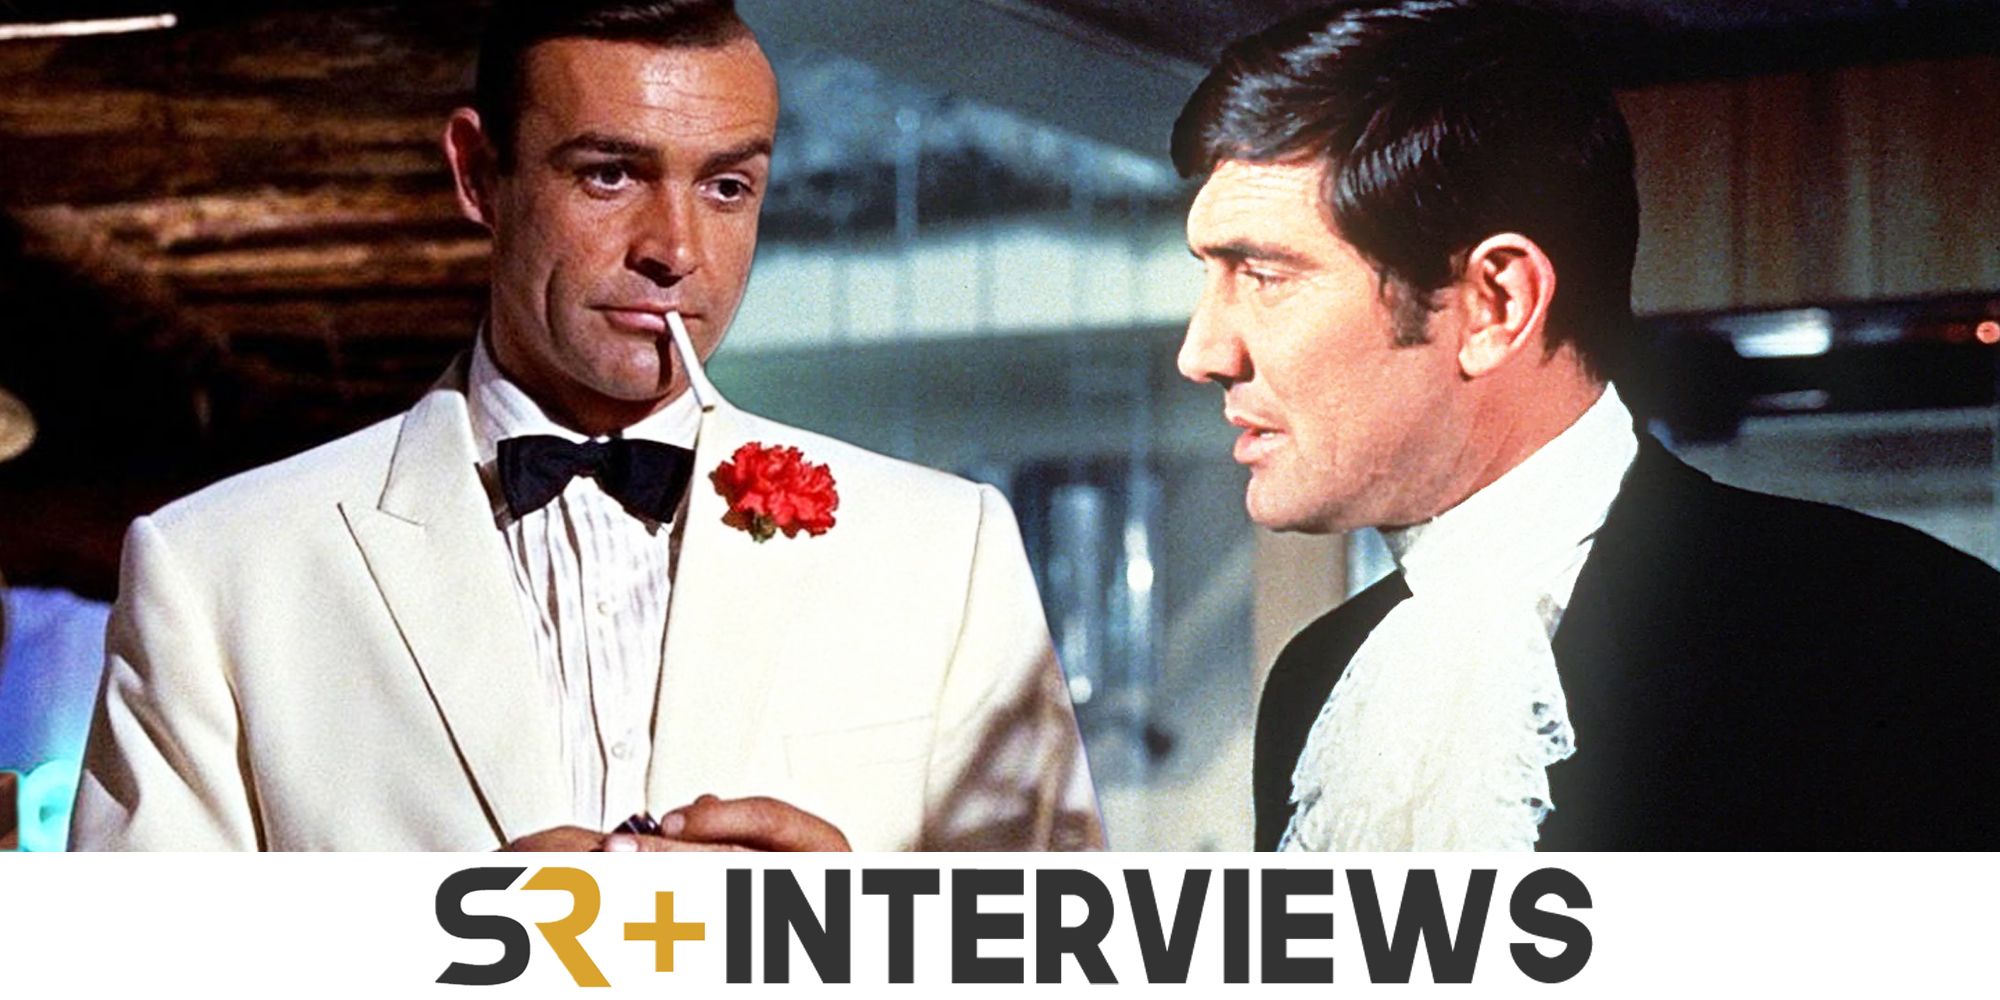 Iconos desenterrados: creador de James Bond sobre entrevistas locas y casting de Bond